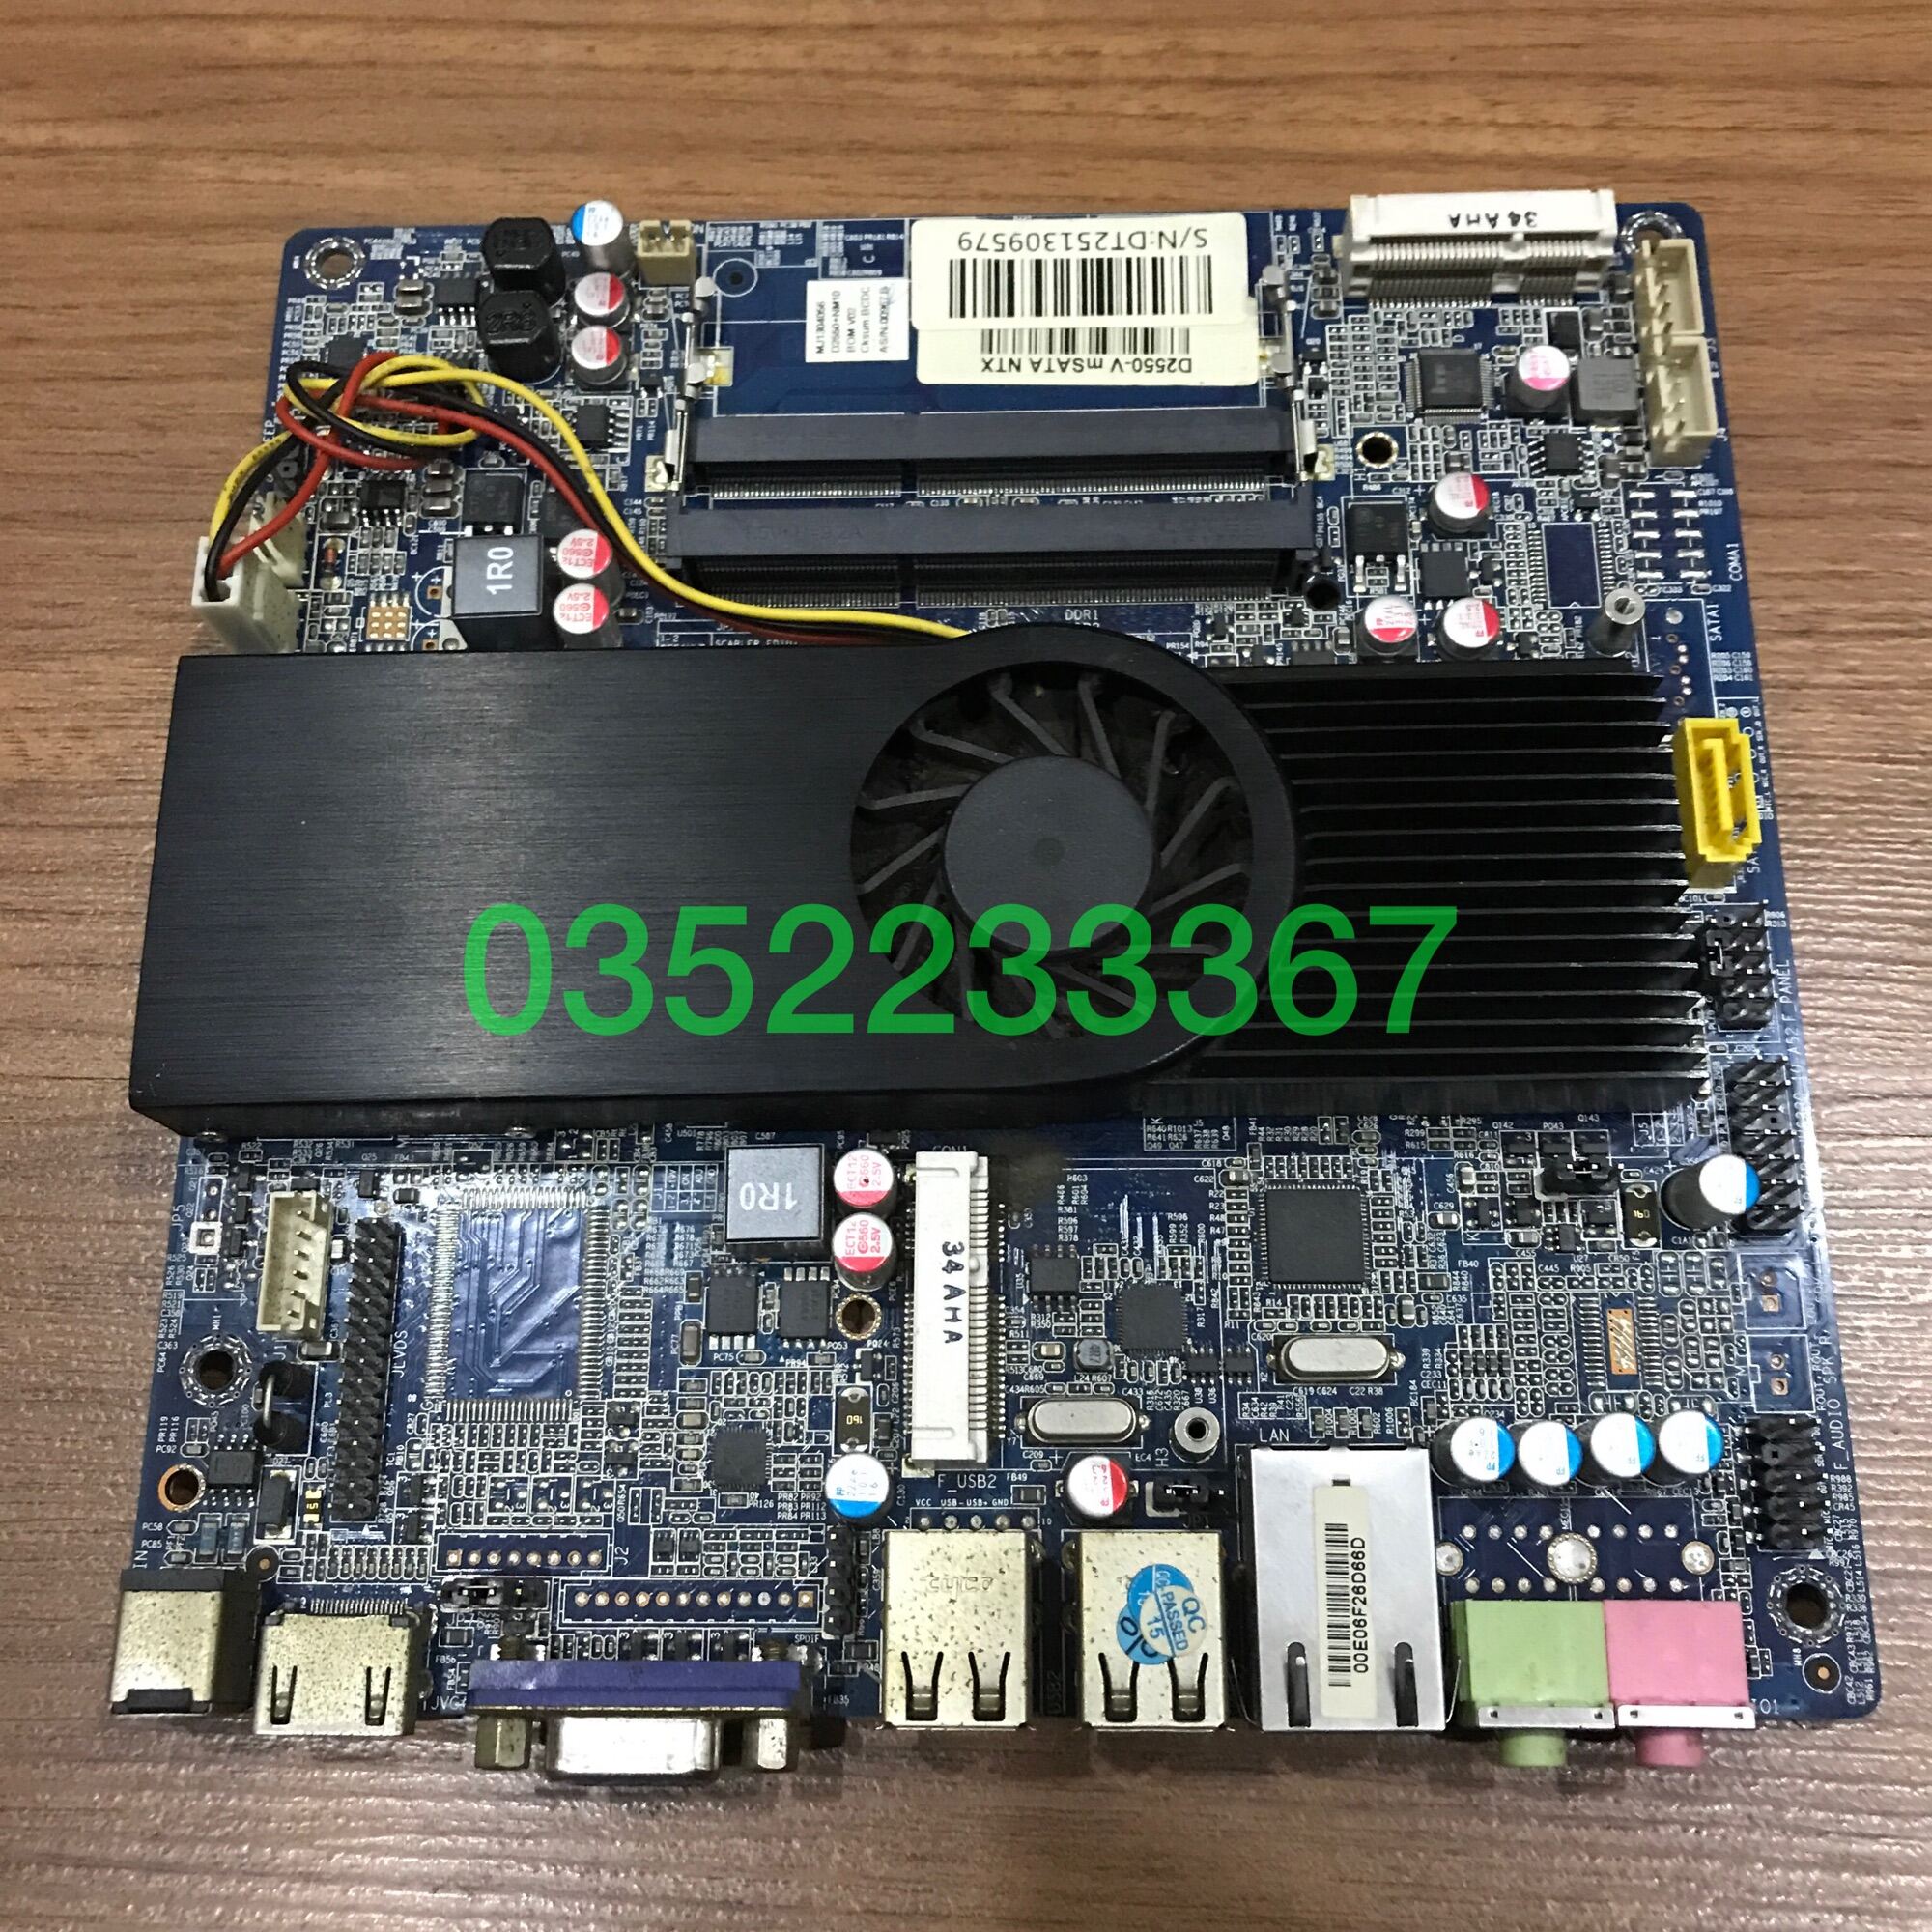 Bảng giá Main ITX công nghiệp D2550, HDMI, VGA, 17x17cm Phong Vũ